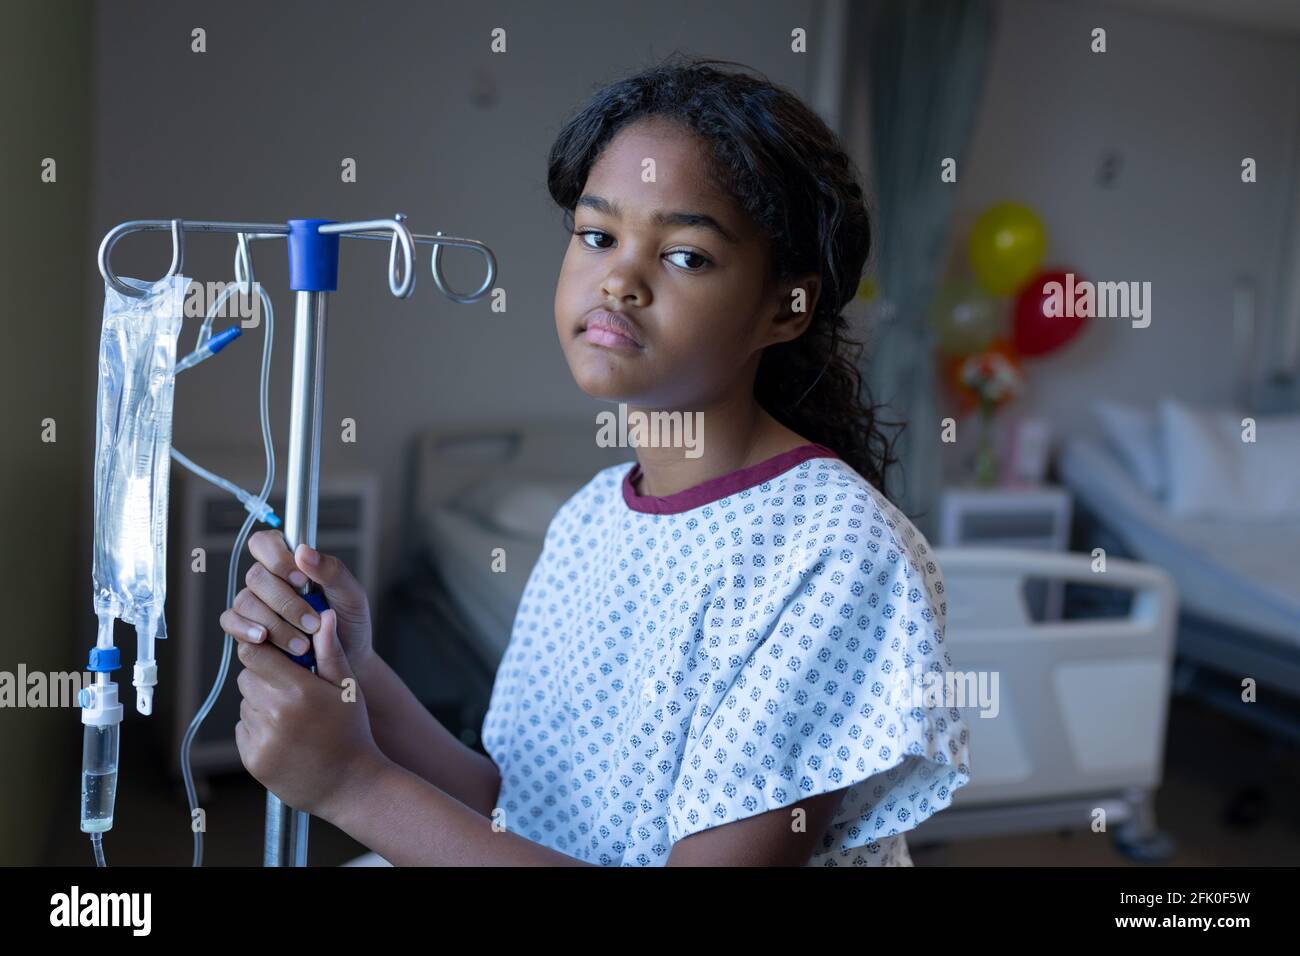 Porträt eines gelangweilten kranken Mädchens mit gemischter Rasse, das im Krankenhaus steht Station mit infusionsbeutel auf Stativ Stockfoto